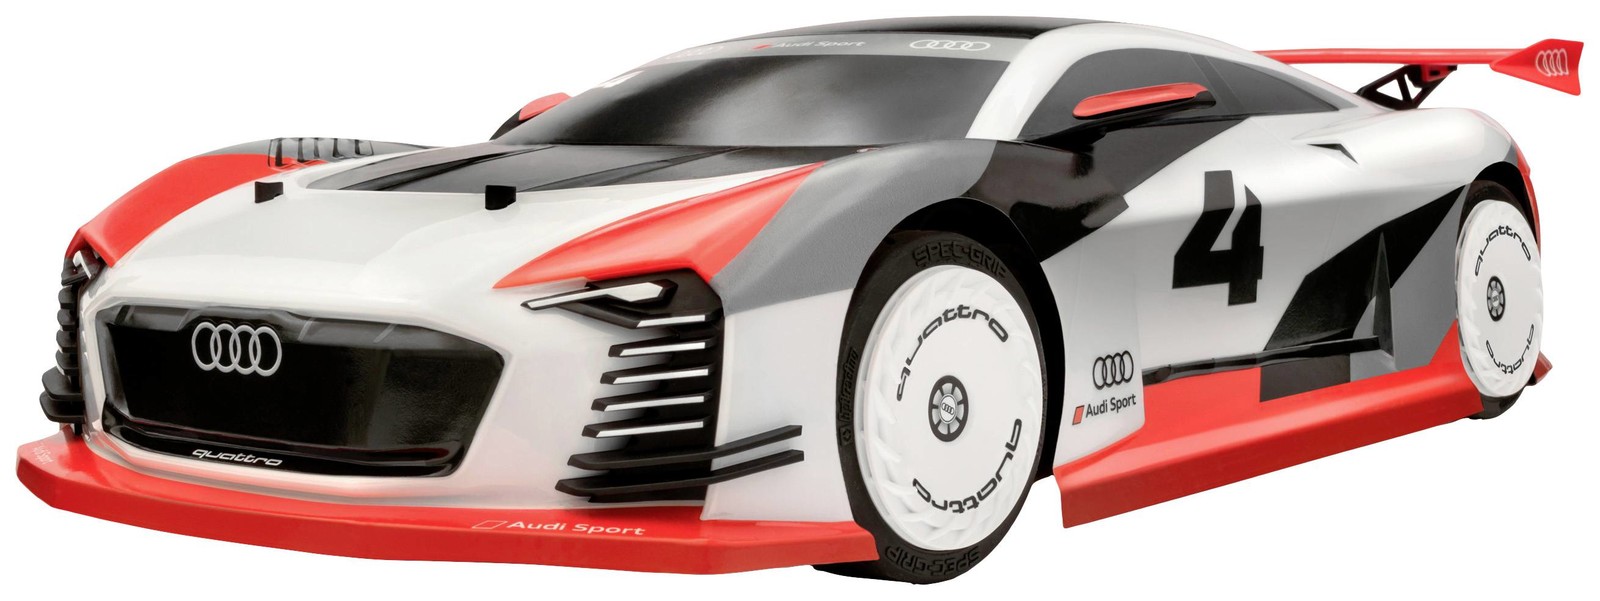 HPI Racing Sport 3 Flux Audi e-tron Vision GT 1:10 RC model auta elektrický cestovní auto 4WD (4x4) RtR 2,4 GHz